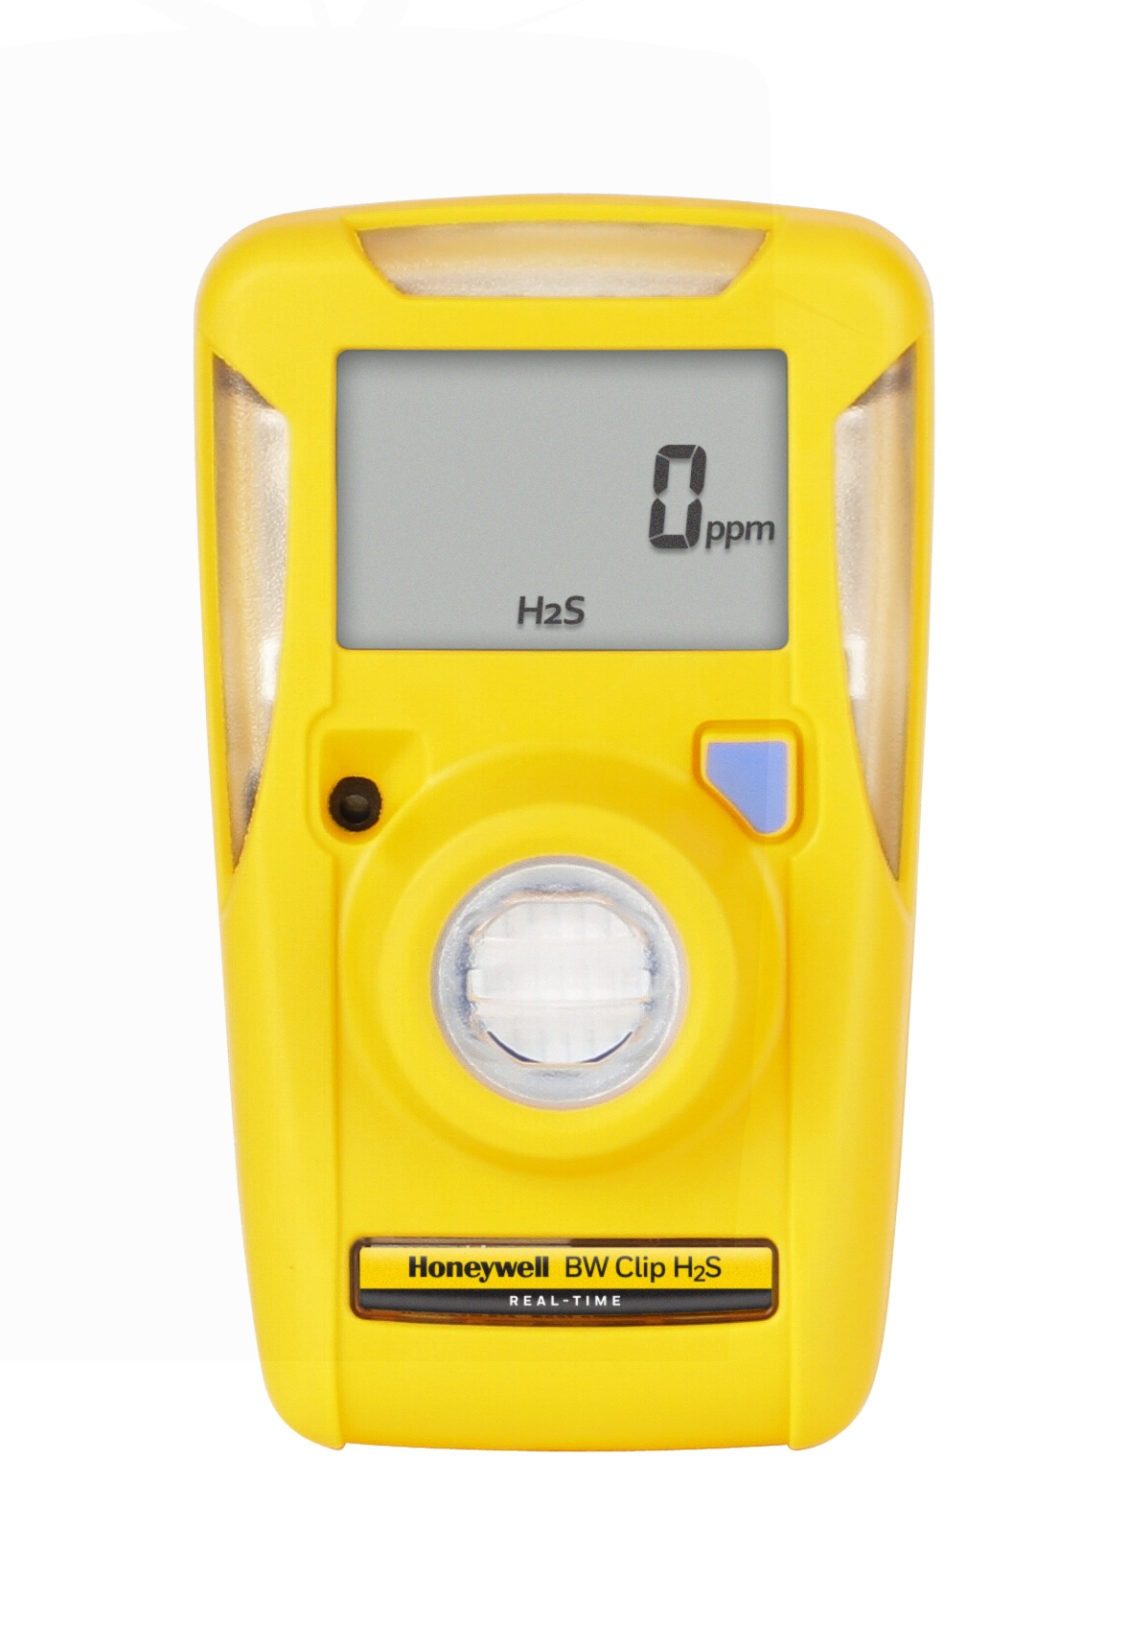 Honeywell BW Clip H2S gassmåler forfra